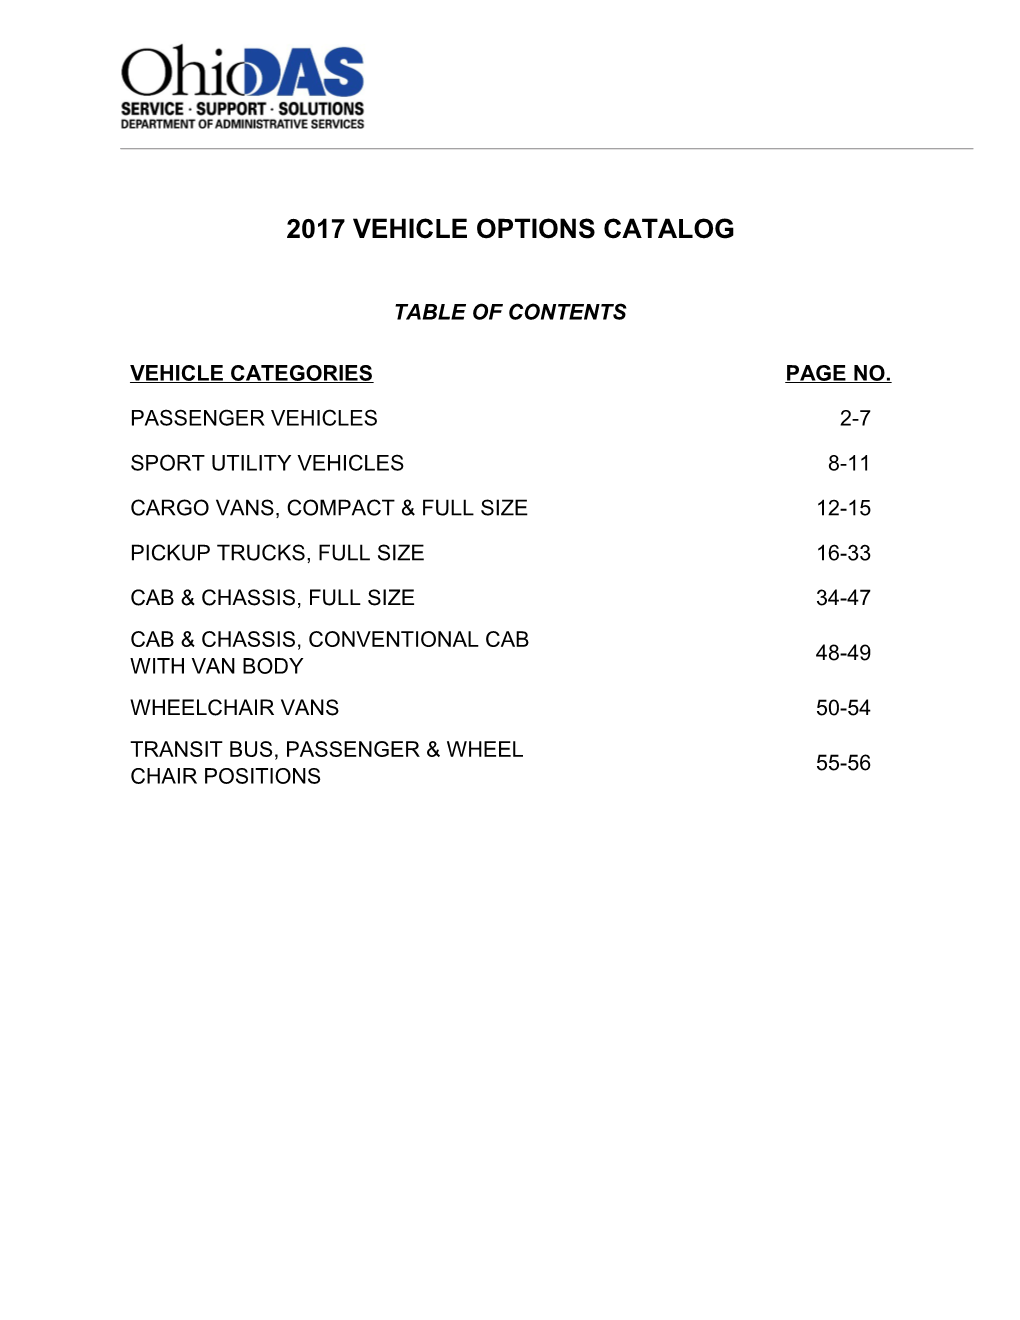 2017 Vehicle Options Catalog